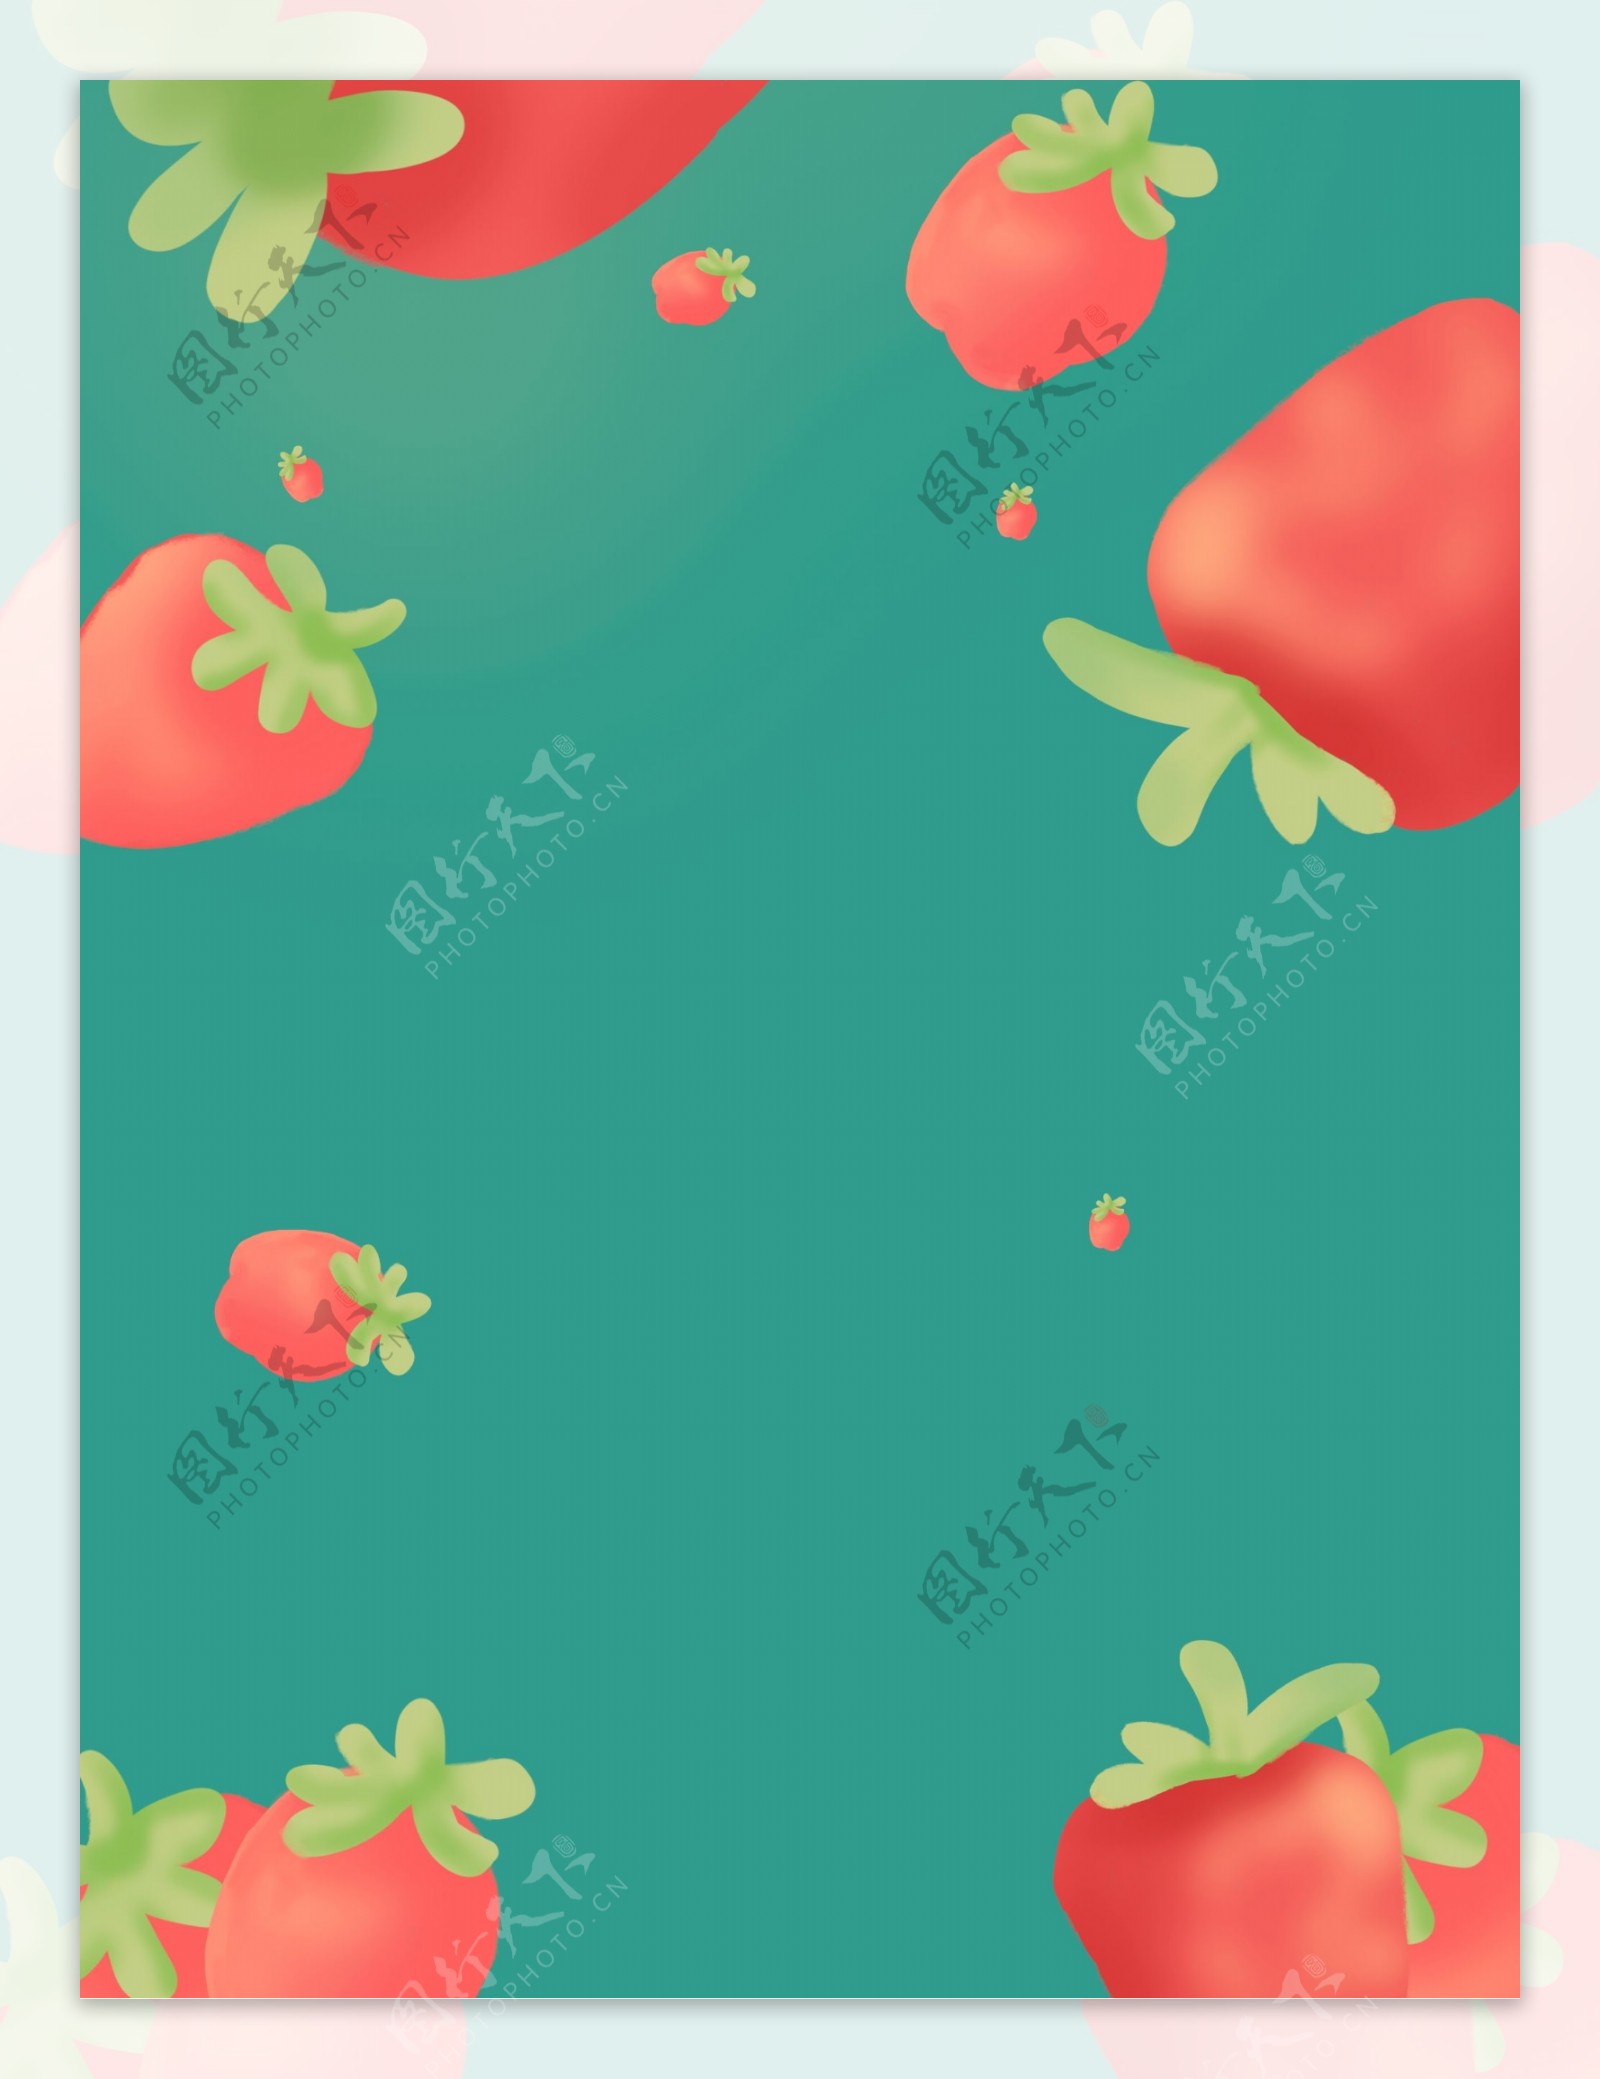 唯美手绘绿色草莓水果插画背景